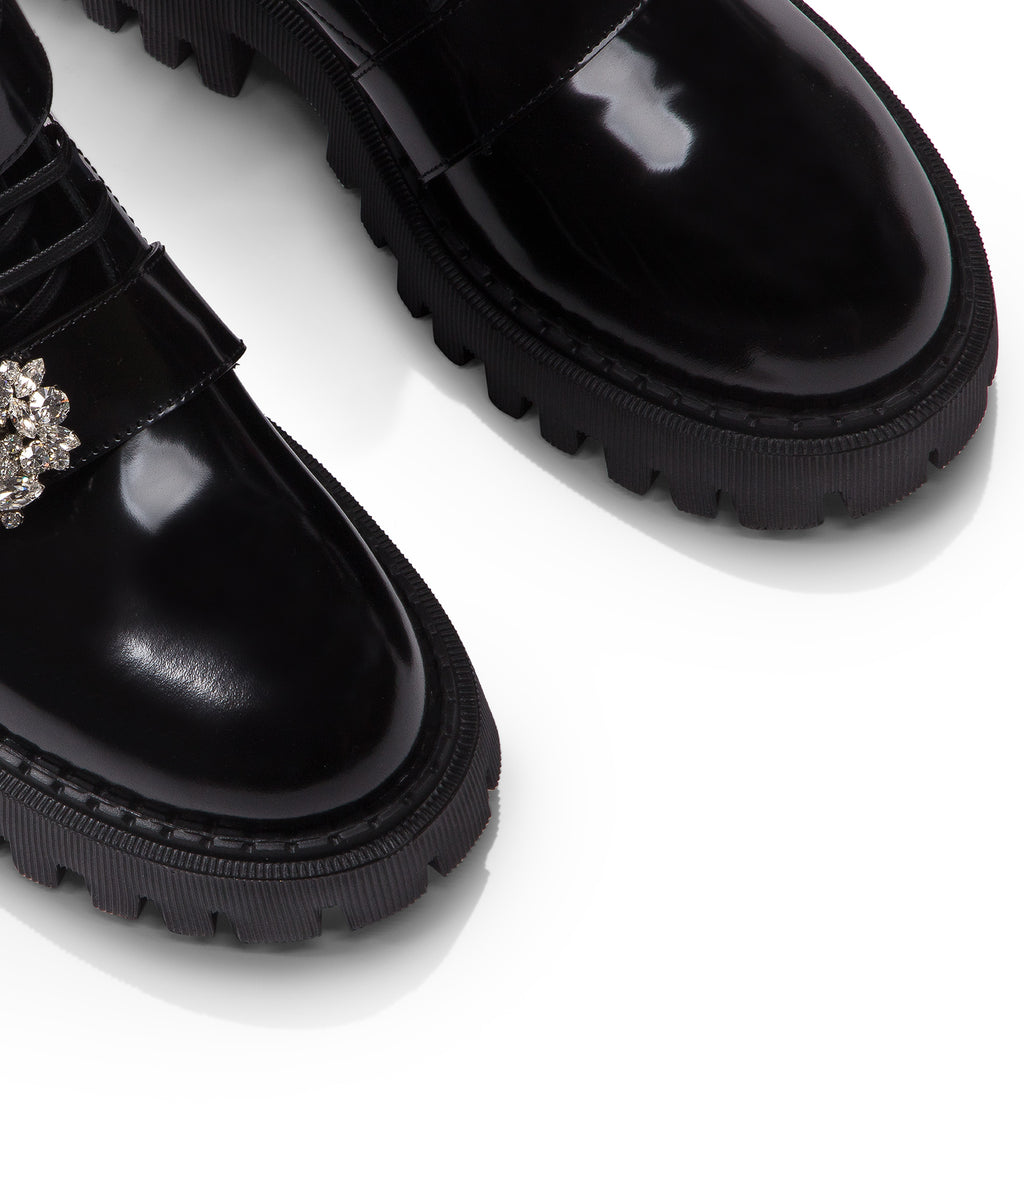 Crystal-embellished black leather ankle boots – Loriblu.com